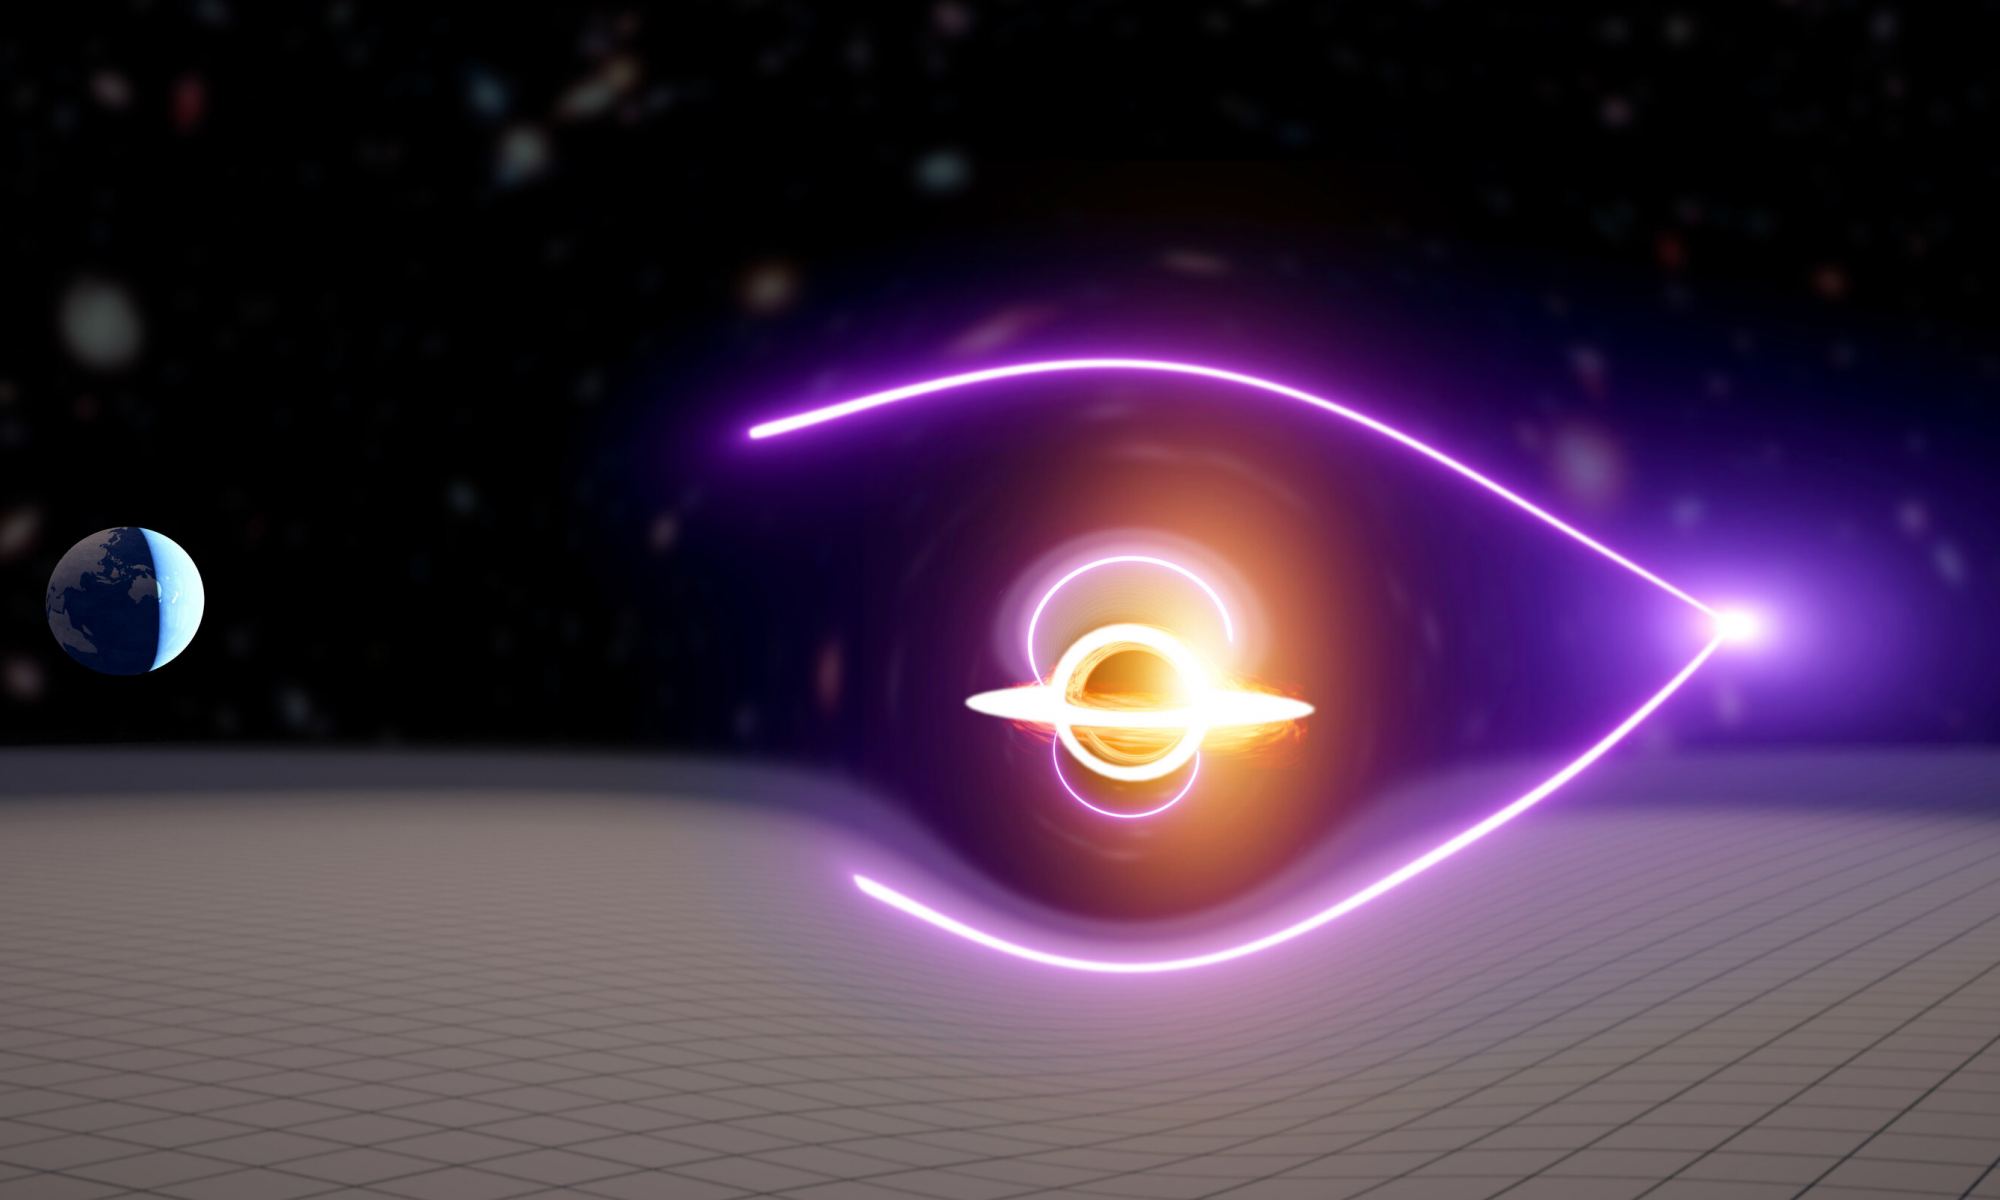 The radiation burst indicates the presence of an elusive medium-sized black hole